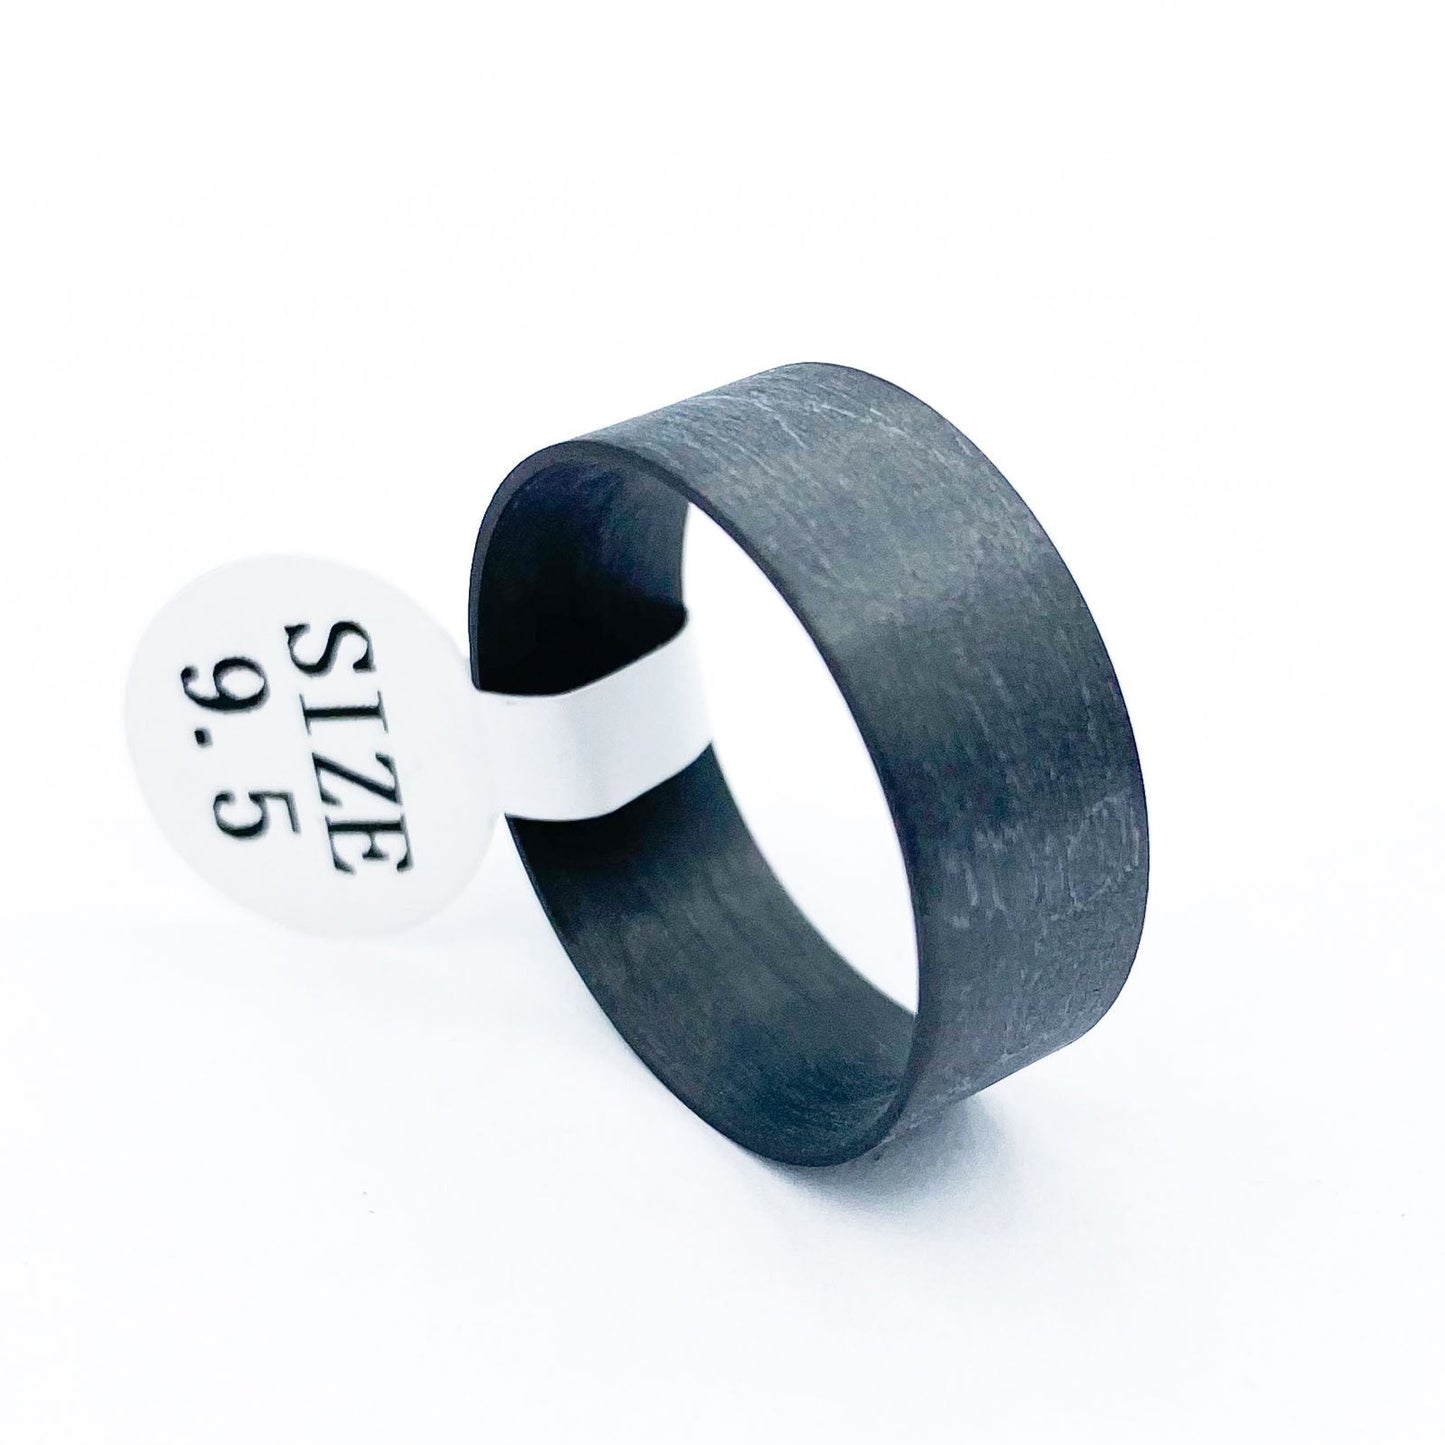 Carbon Fiber Ring Liner - Patrick Adair Supplies